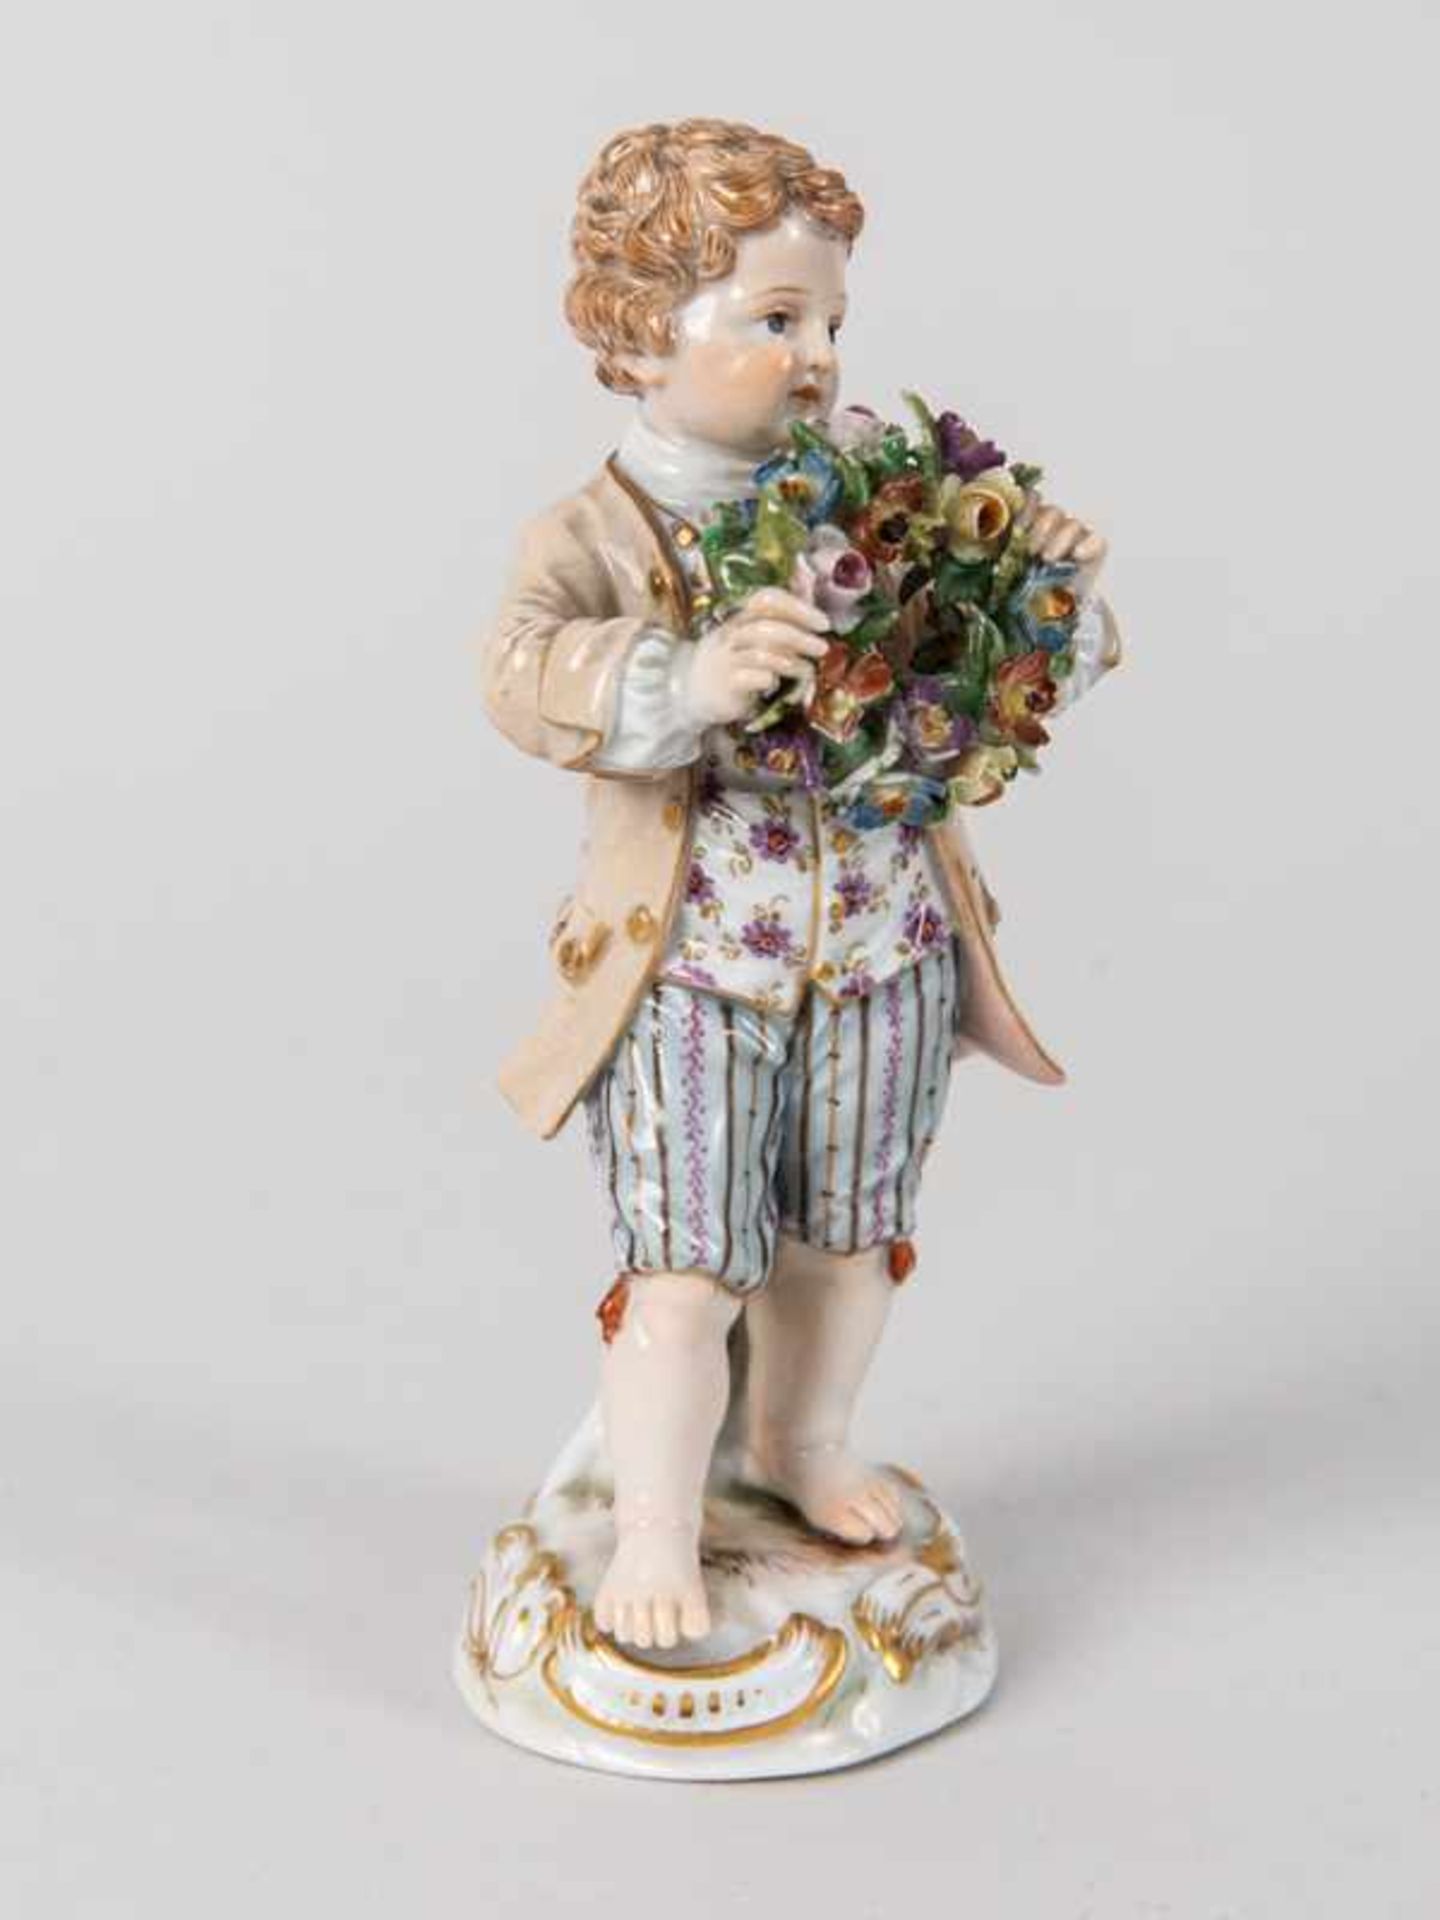 Porzellanfigur "Gärtnerjunge", Meissen, um 1900. - Bild 2 aus 7